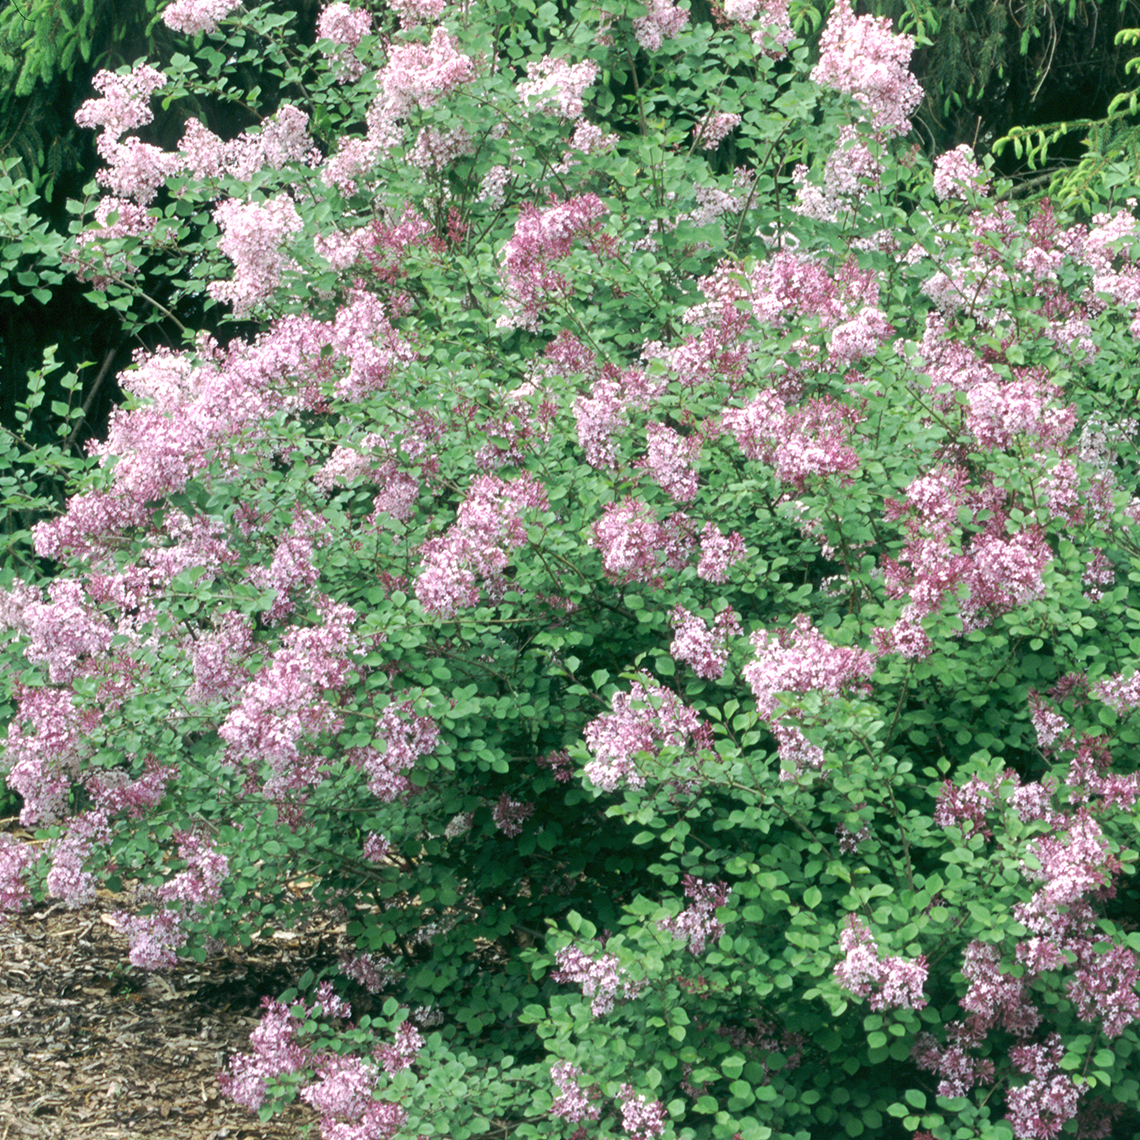 Josee lilac shrub in the landscape